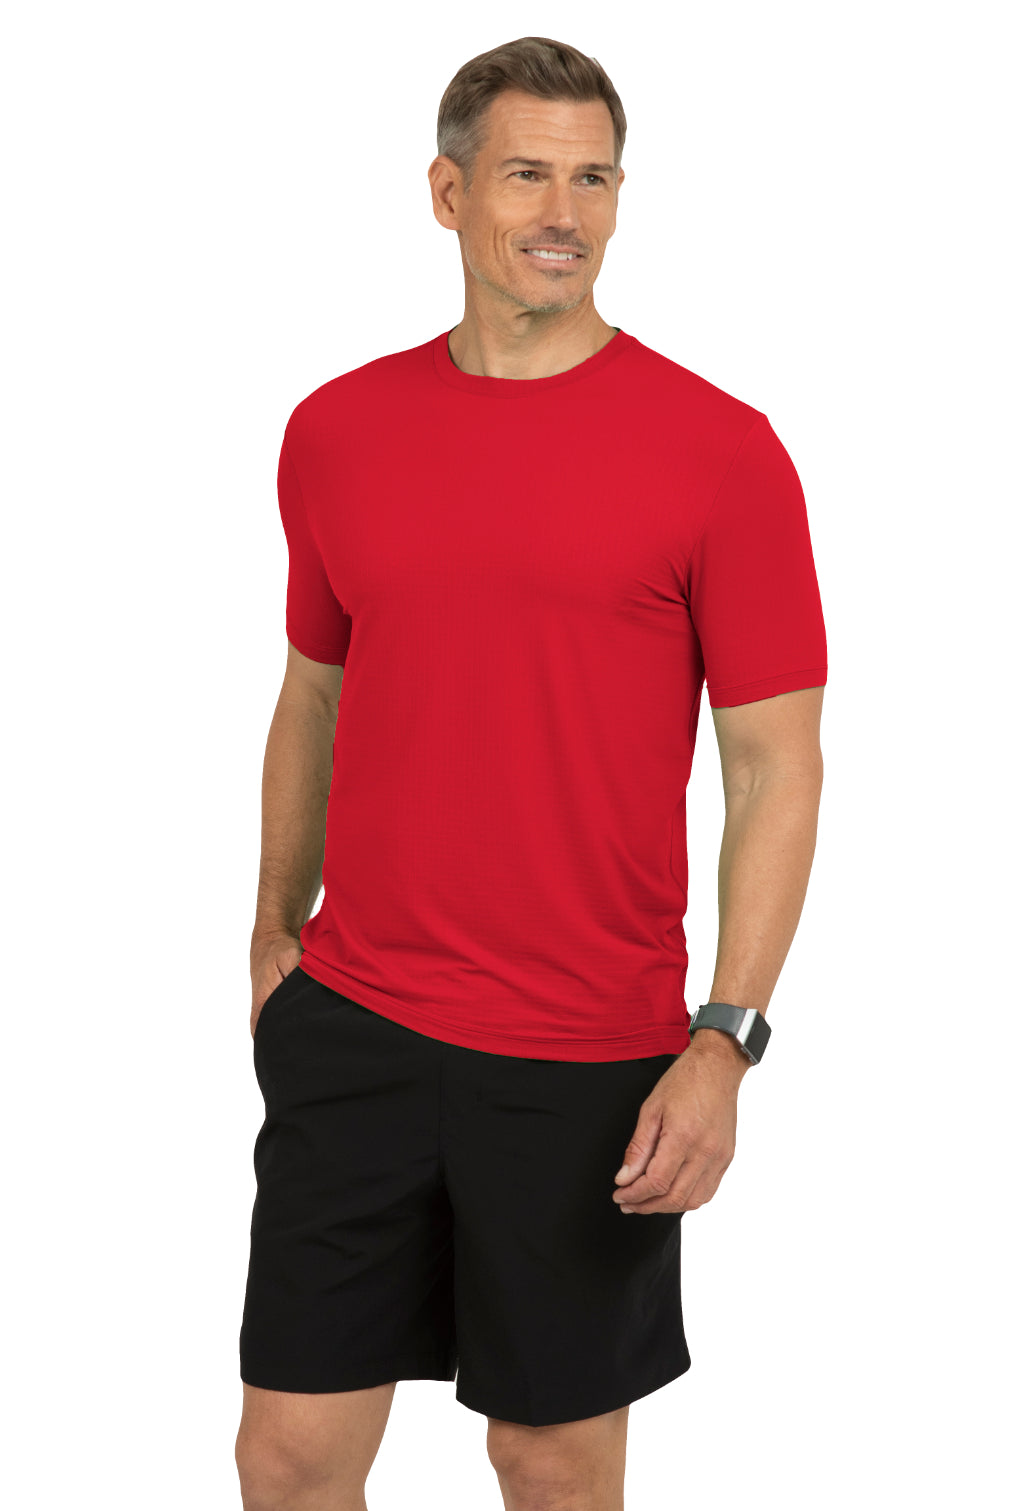 IBKÜL - Short Sleeve Crewneck T-Shirt - 92199 (Modern Fit) - Color: Red